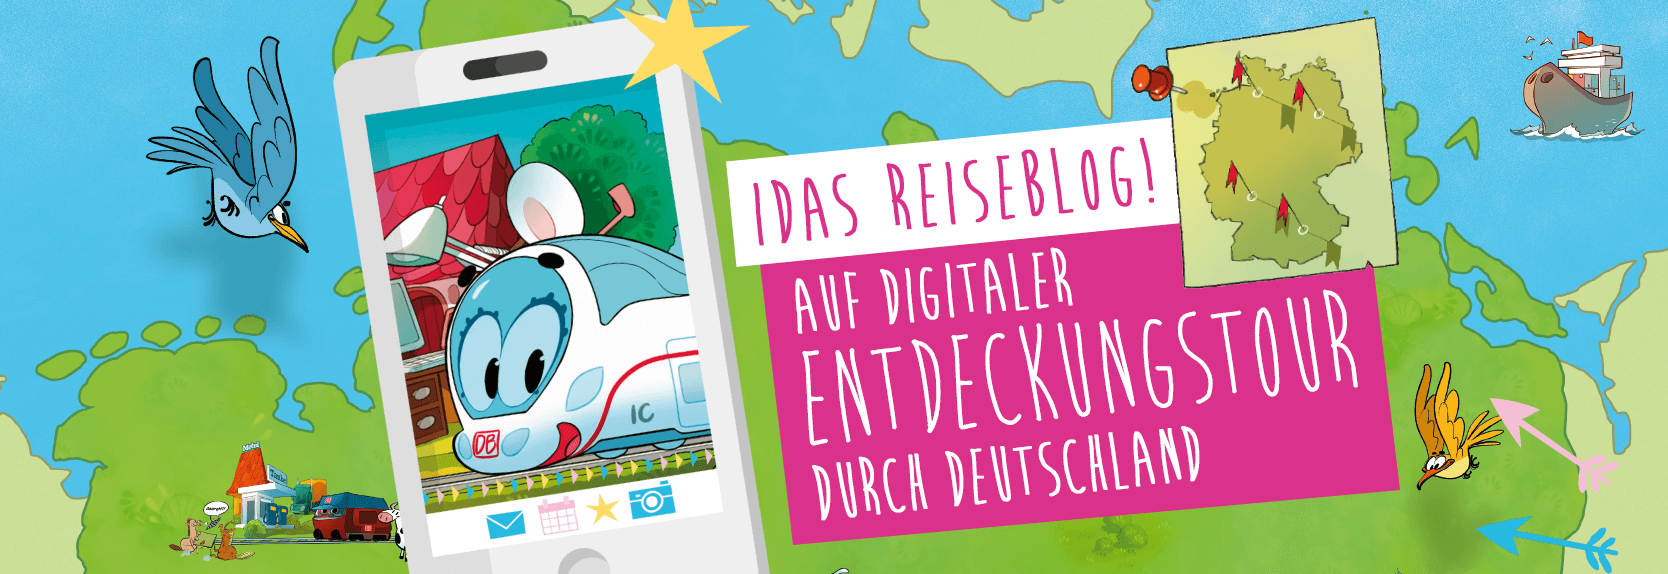 "Ida Reiseblog! Auf digitaler Entdeckungstour durch Deutschland". Ida lächelt durch ein Handy-Display. Deutschlandkarte ist im Hintergrund zu sehen.